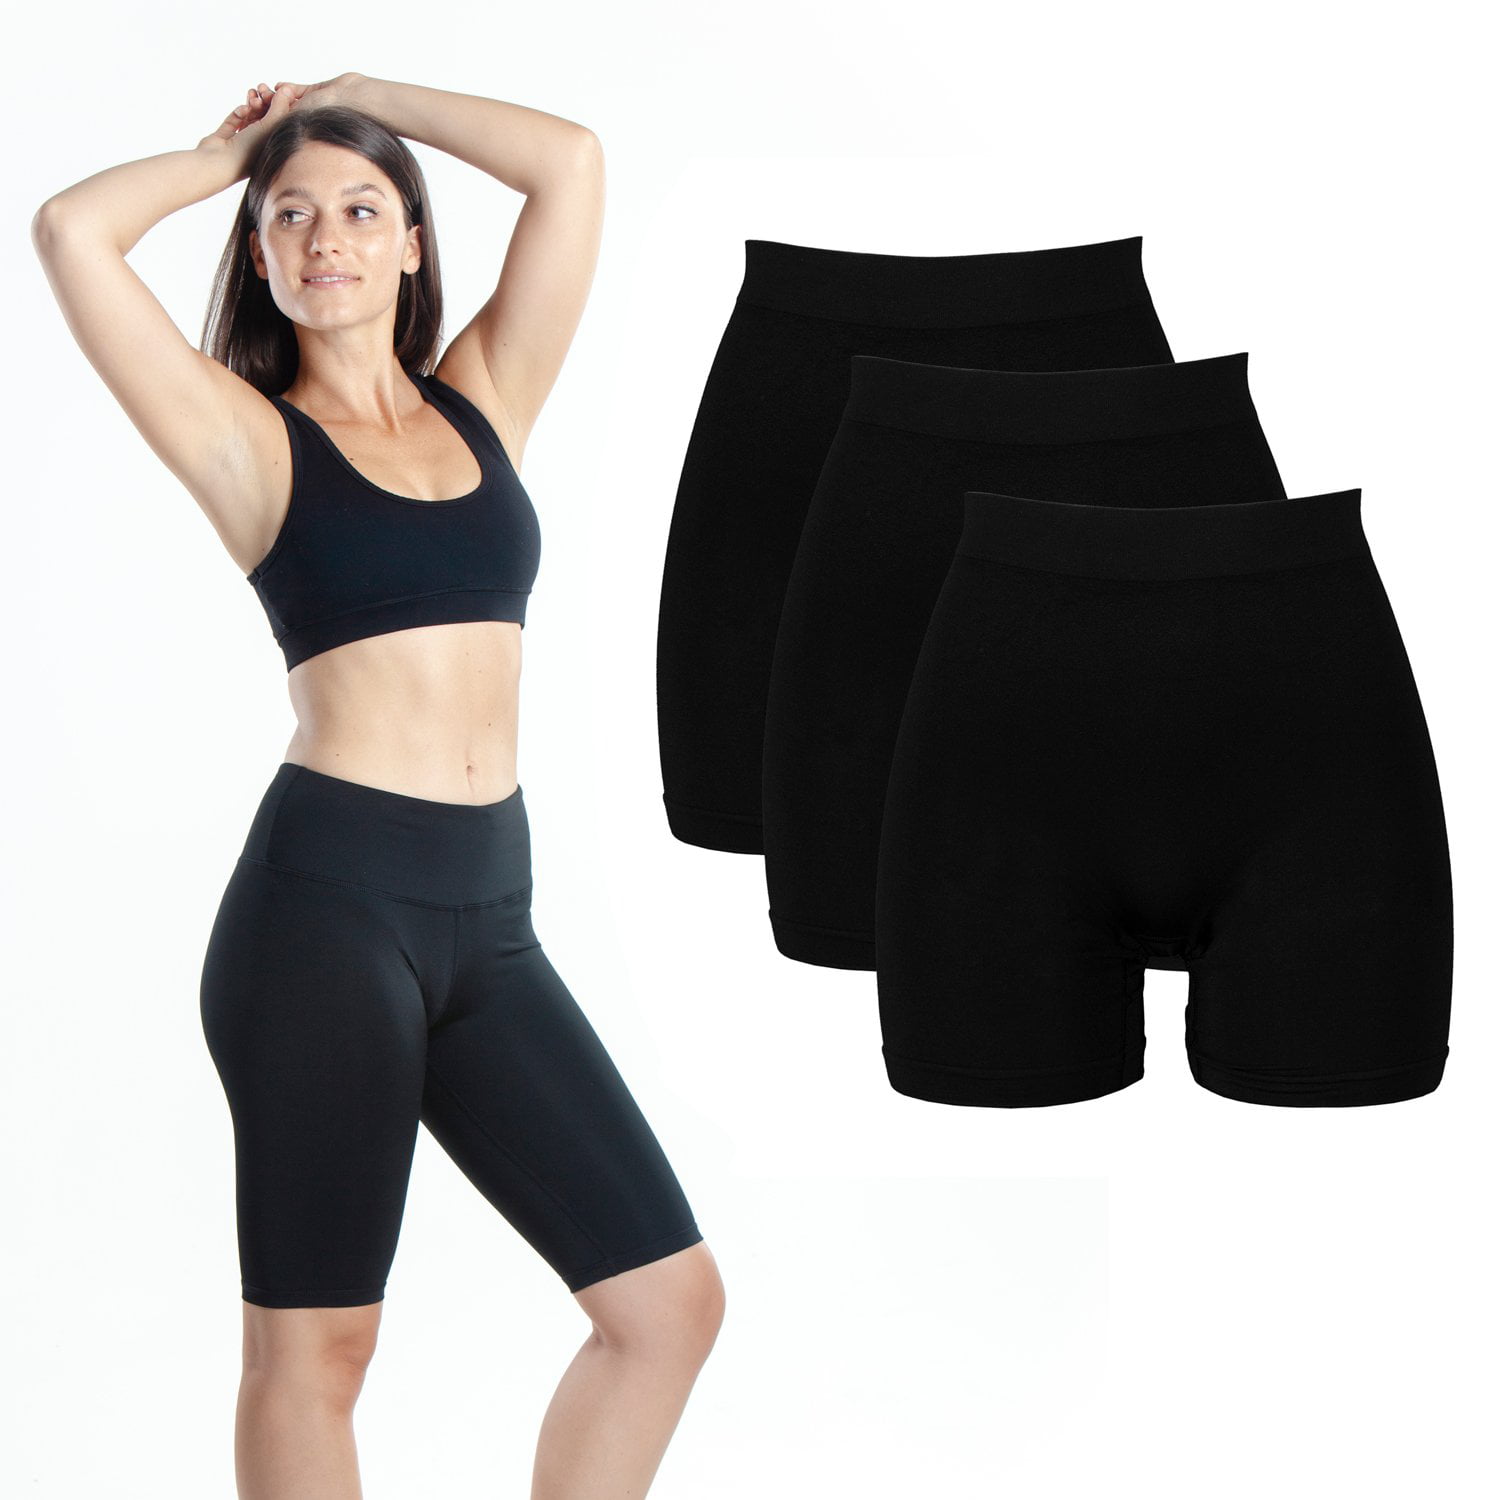 3-Pack Black Bike Shorts Emprella Slip Shorts Cotton Spandex Stretch Boyshorts for Yoga 